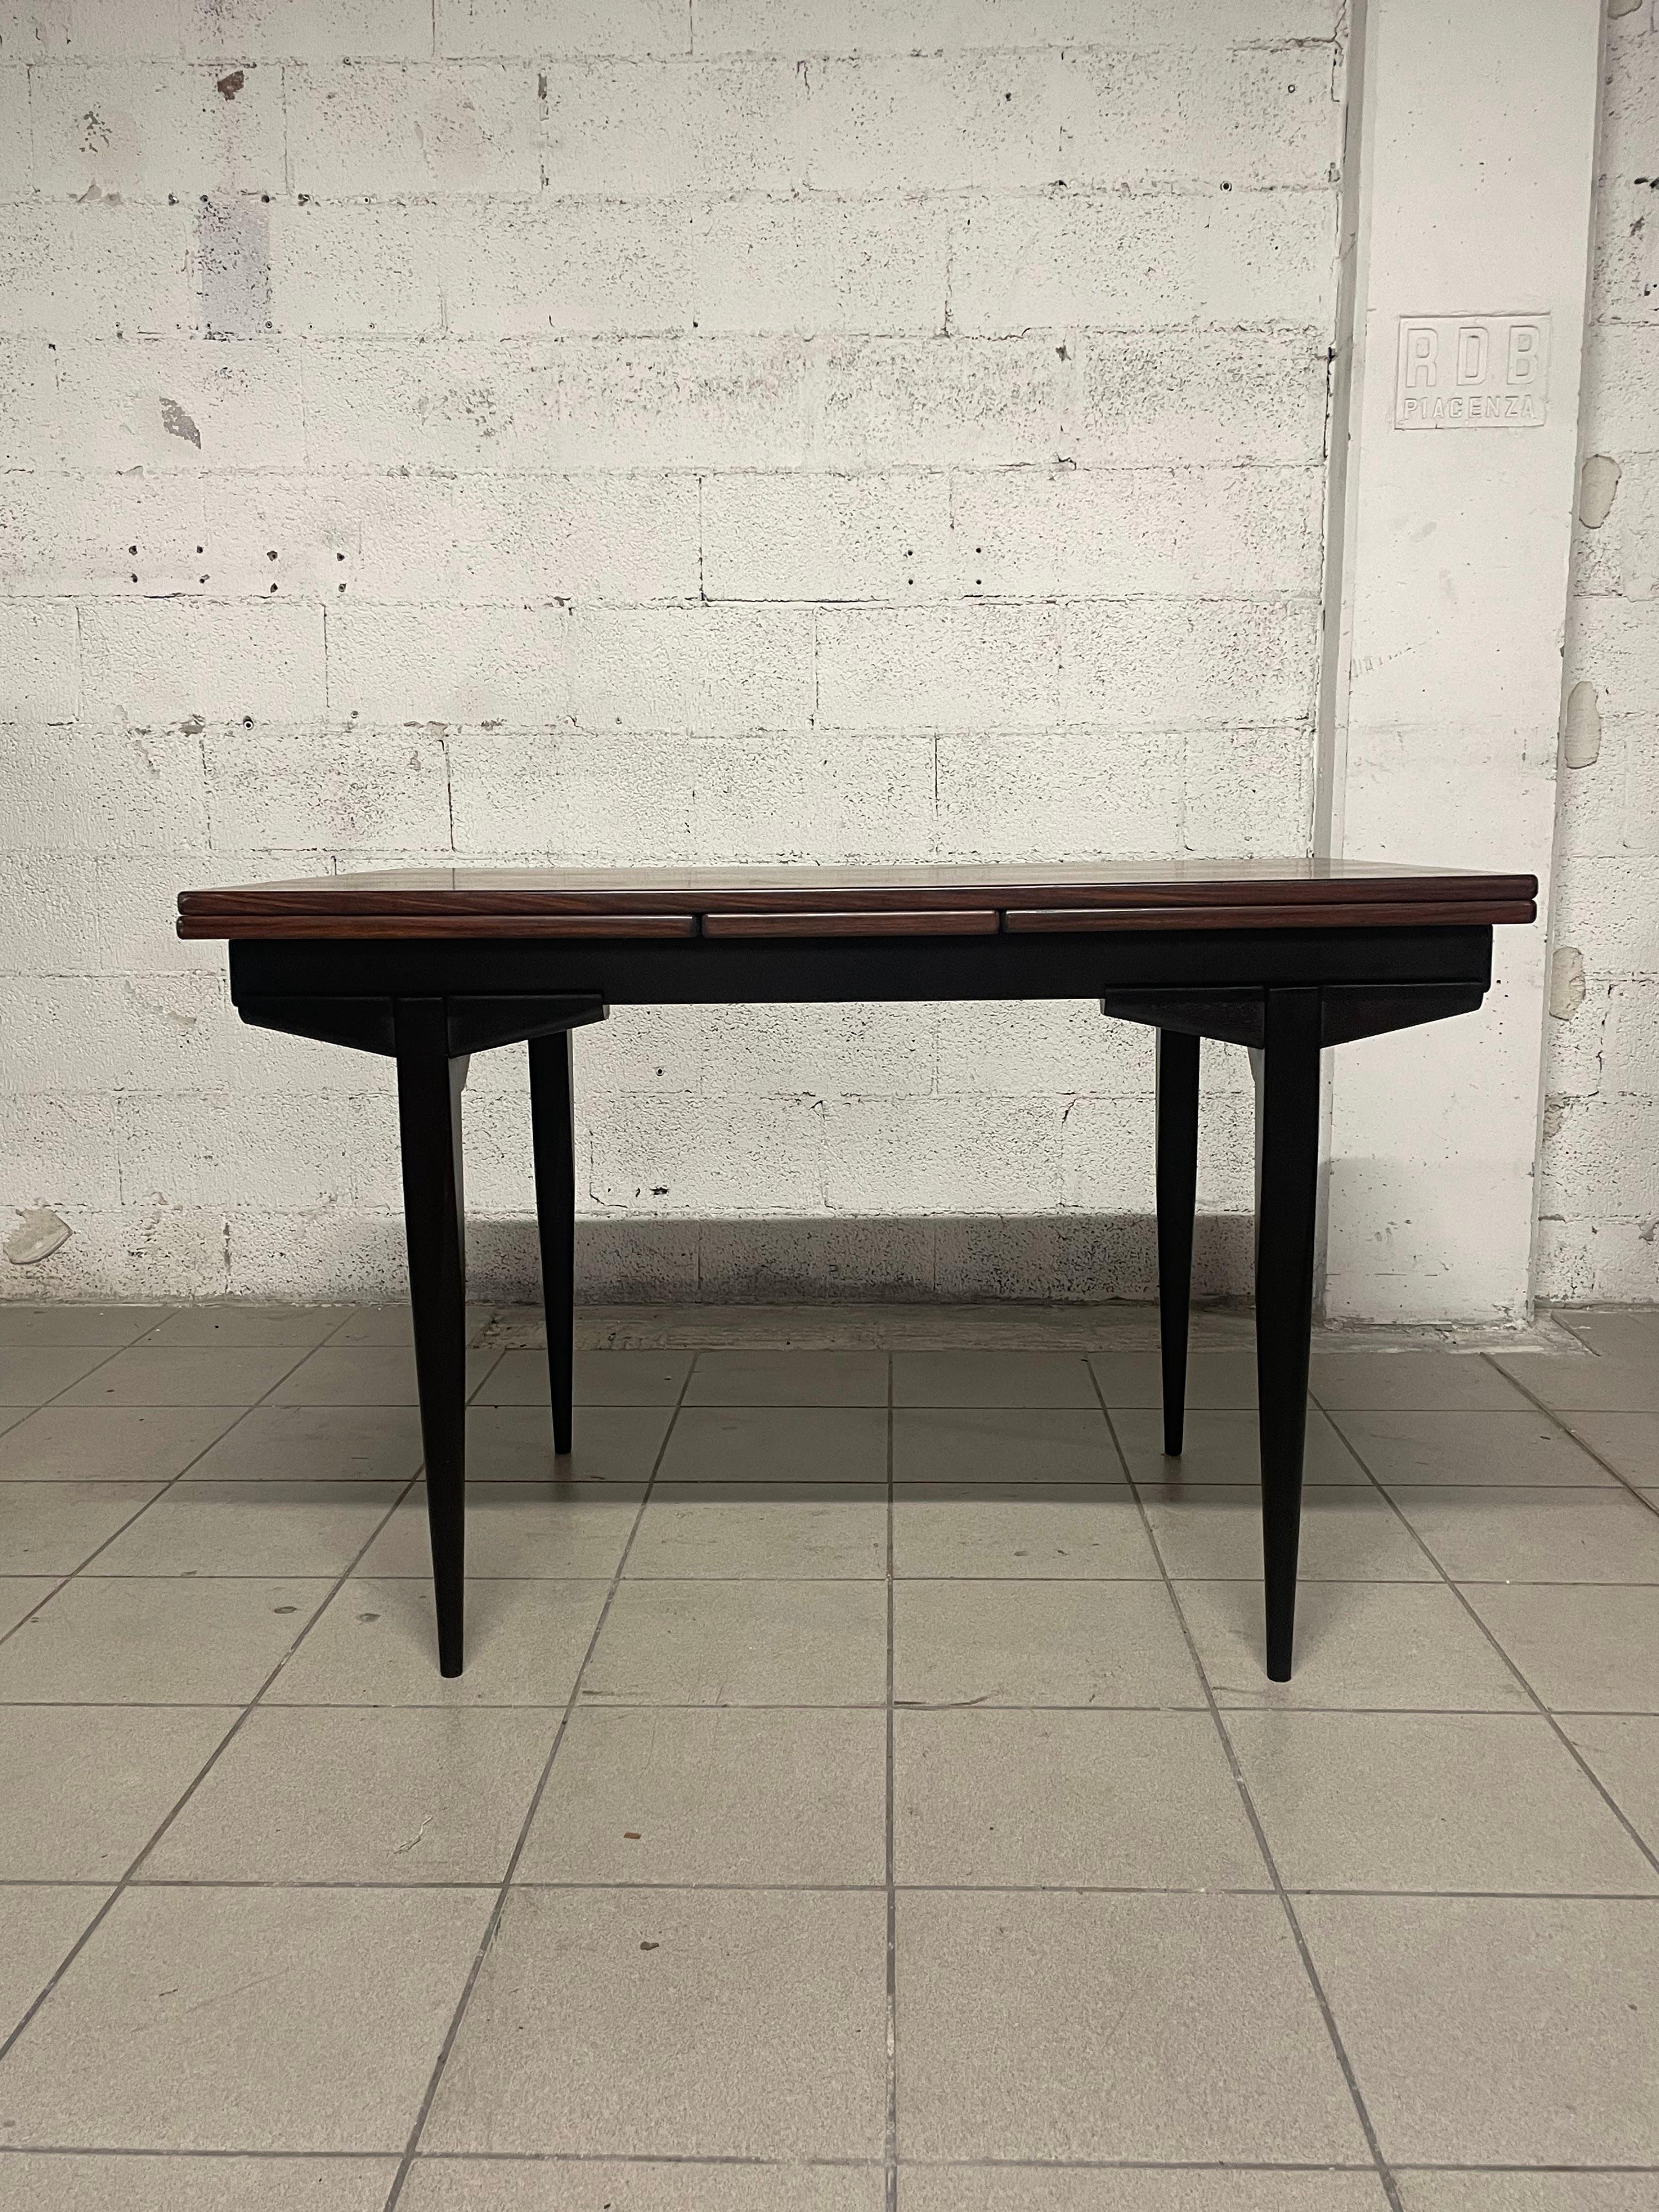 Table à rallonge des années 1960 en palissandre avec pieds en bois teinté.

Lorsque les deux rallonges sont ouvertes, la table atteint une longueur de 213 cm.
Il est parfait pour un espace de vie où il peut accueillir jusqu'à 12 personnes